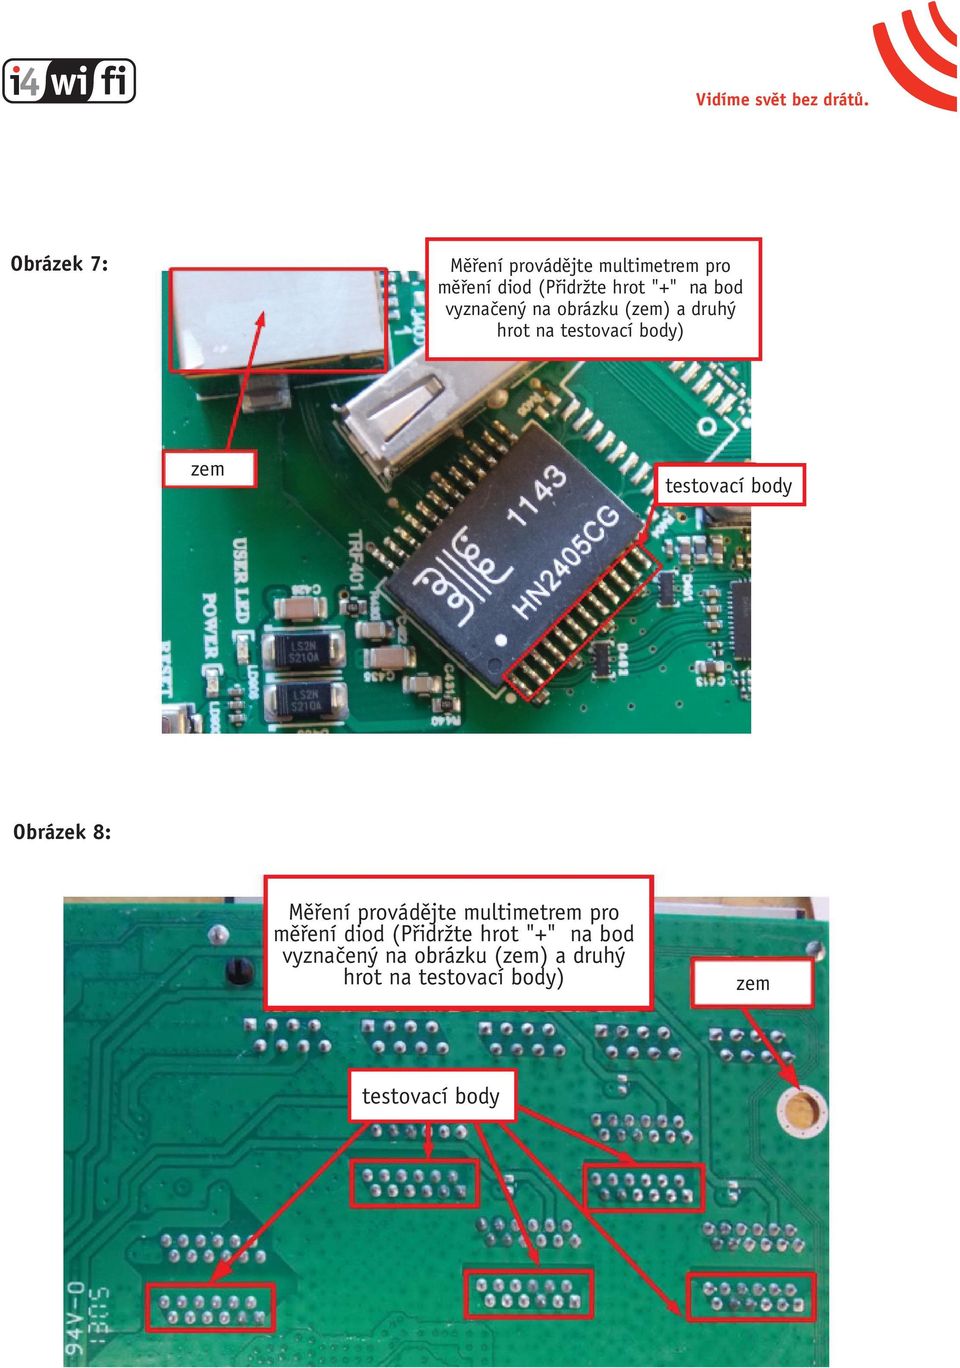 body Obrázek 8: Měření provádějte multimetrem pro měření diod (Přidržte hrot